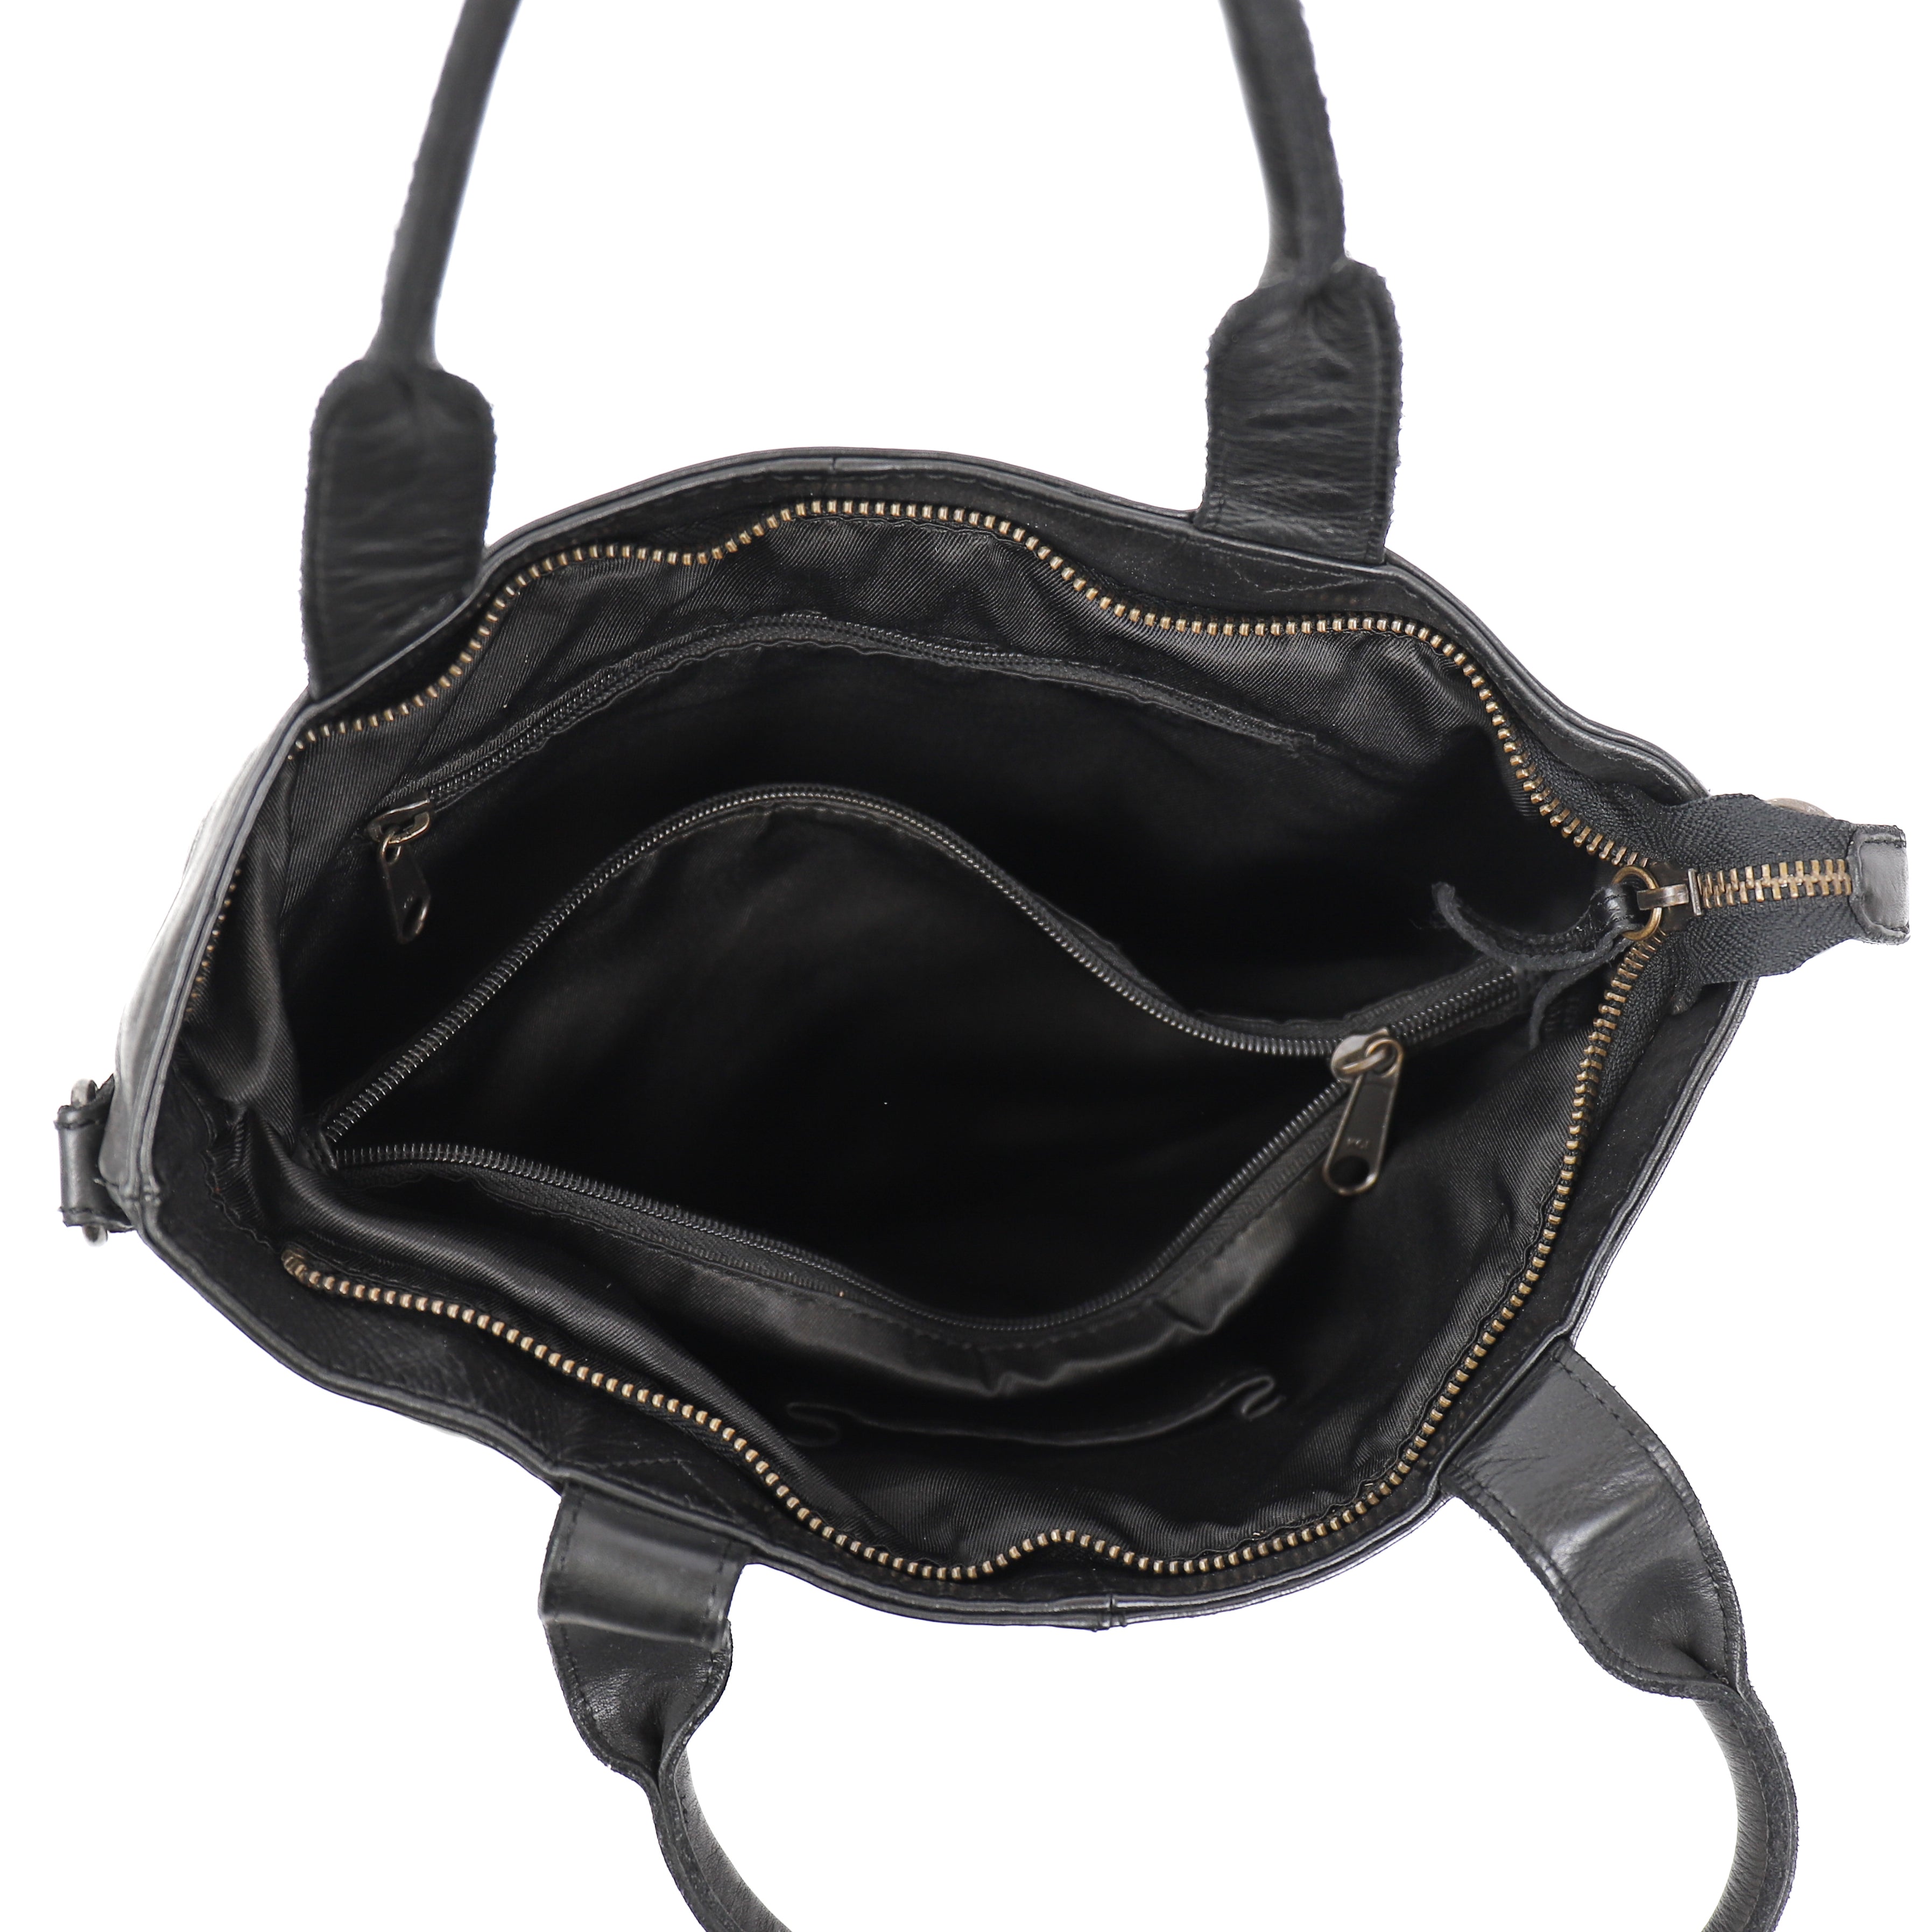 Hand/shoulder bag 'Manon' black